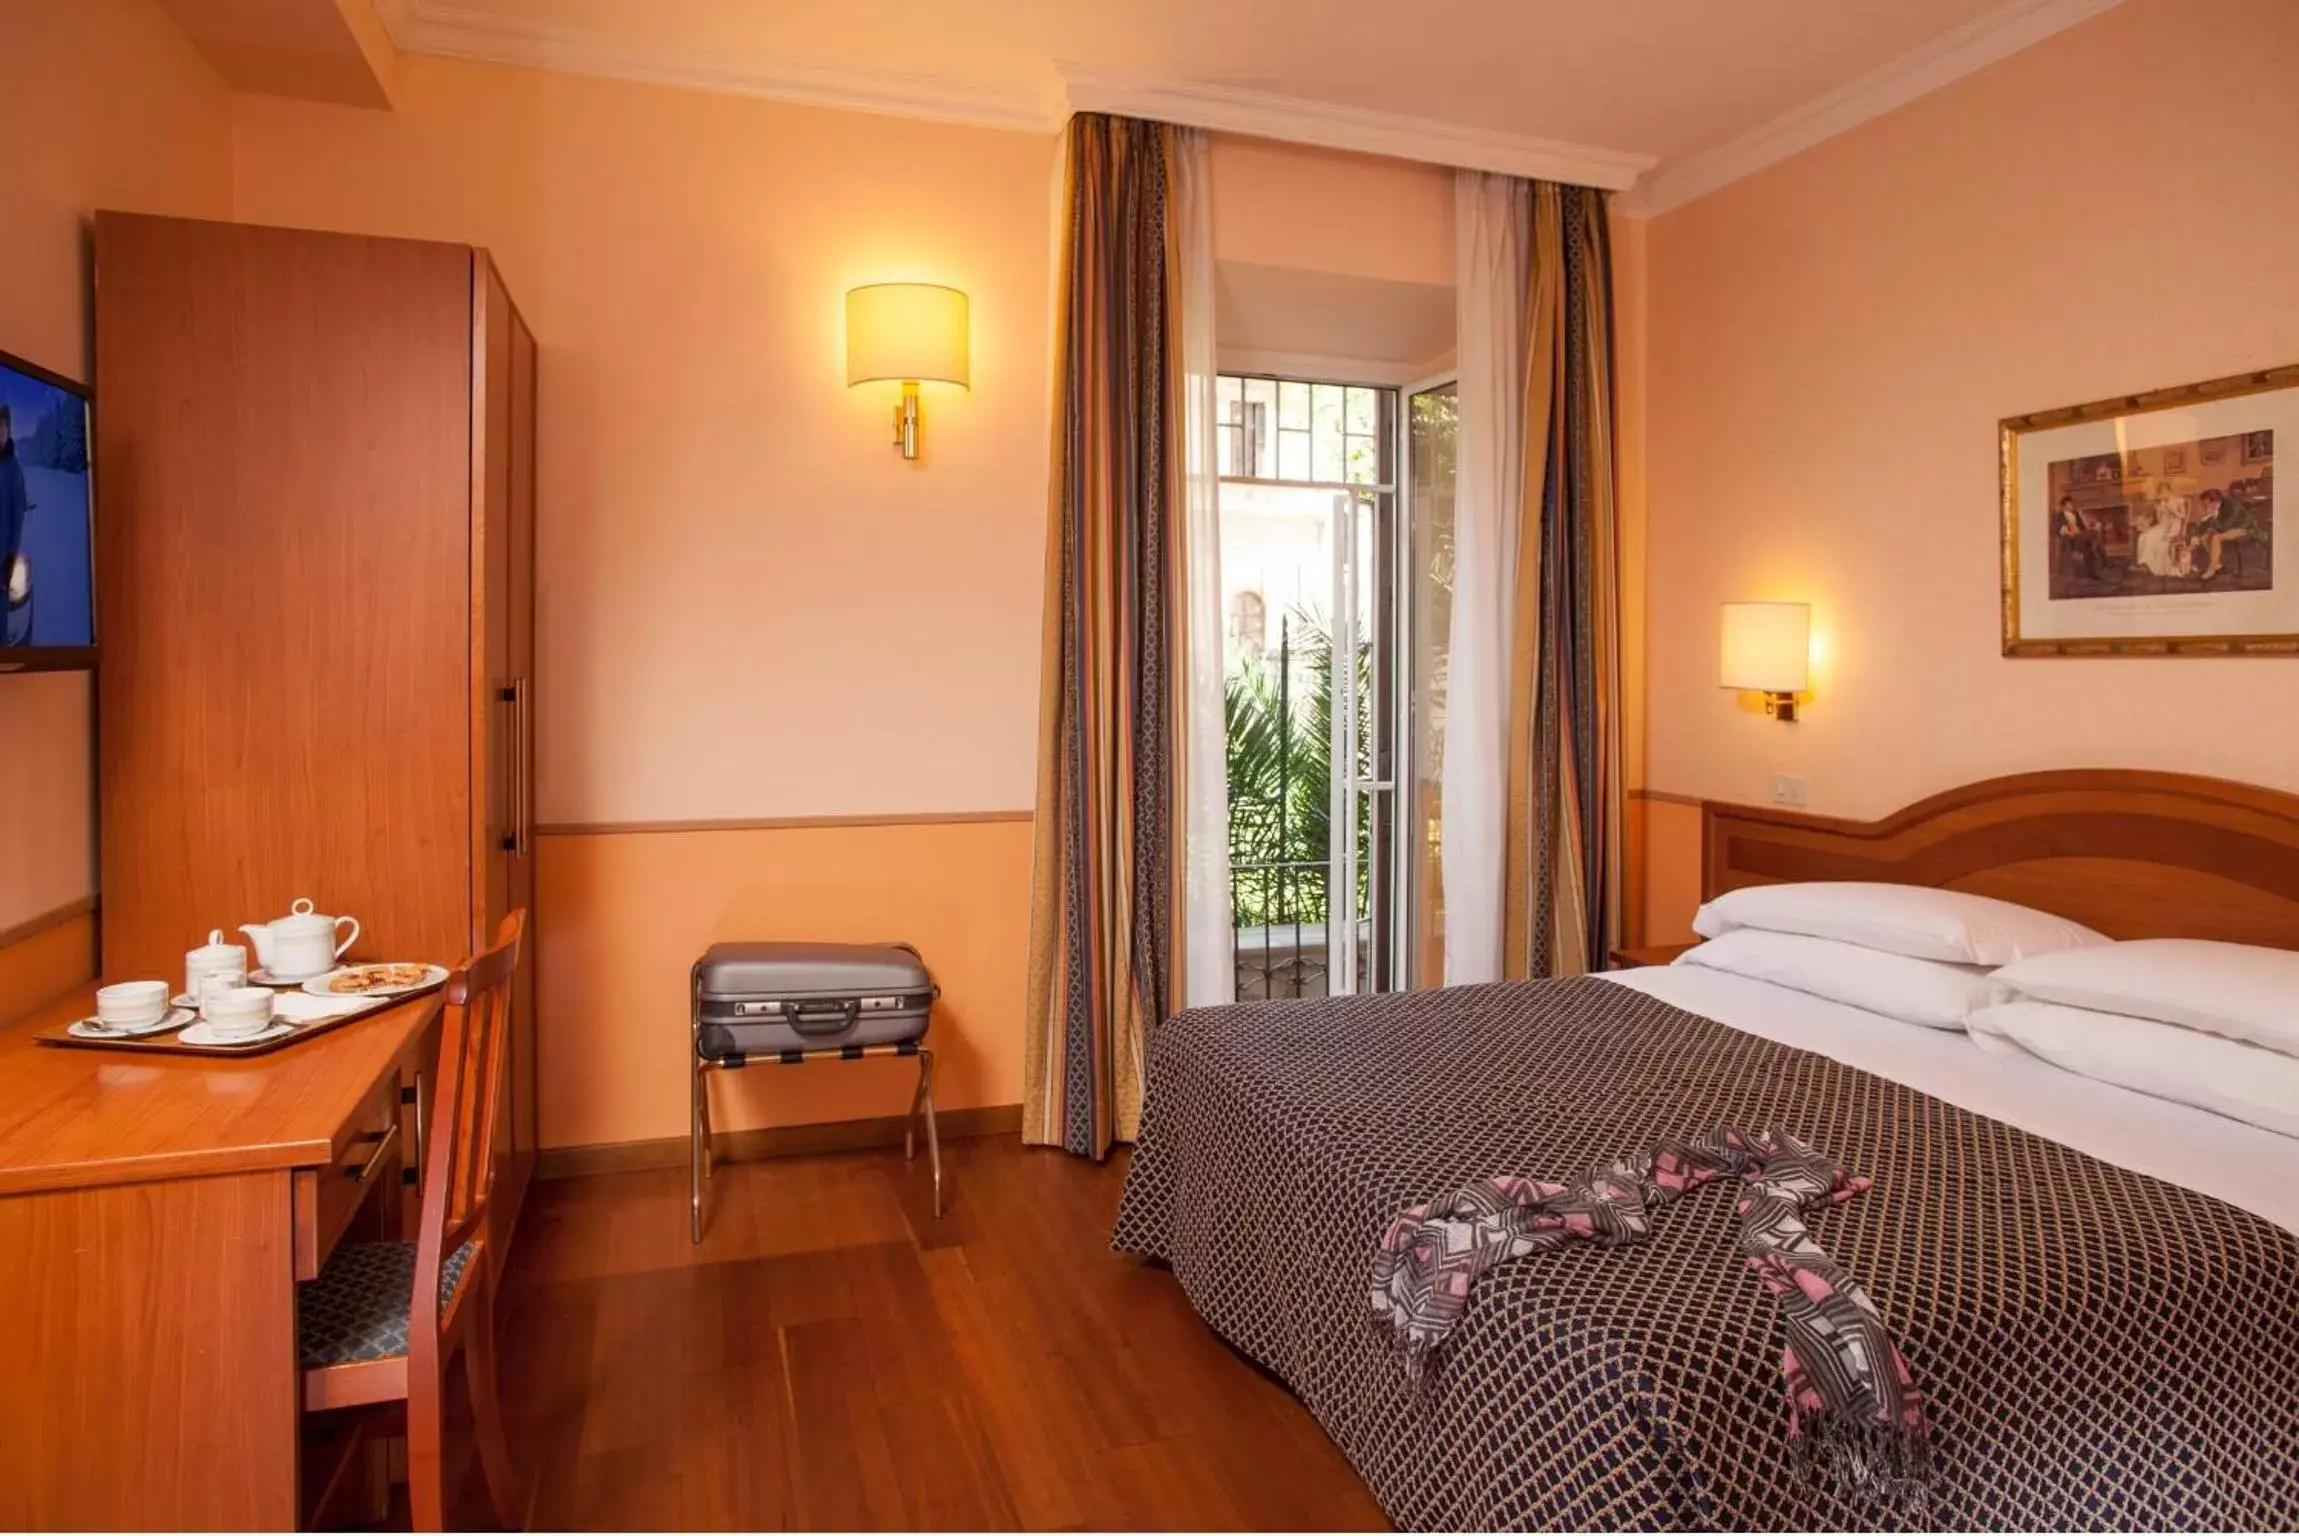 Bedroom, Room Photo in Hotel Piemonte